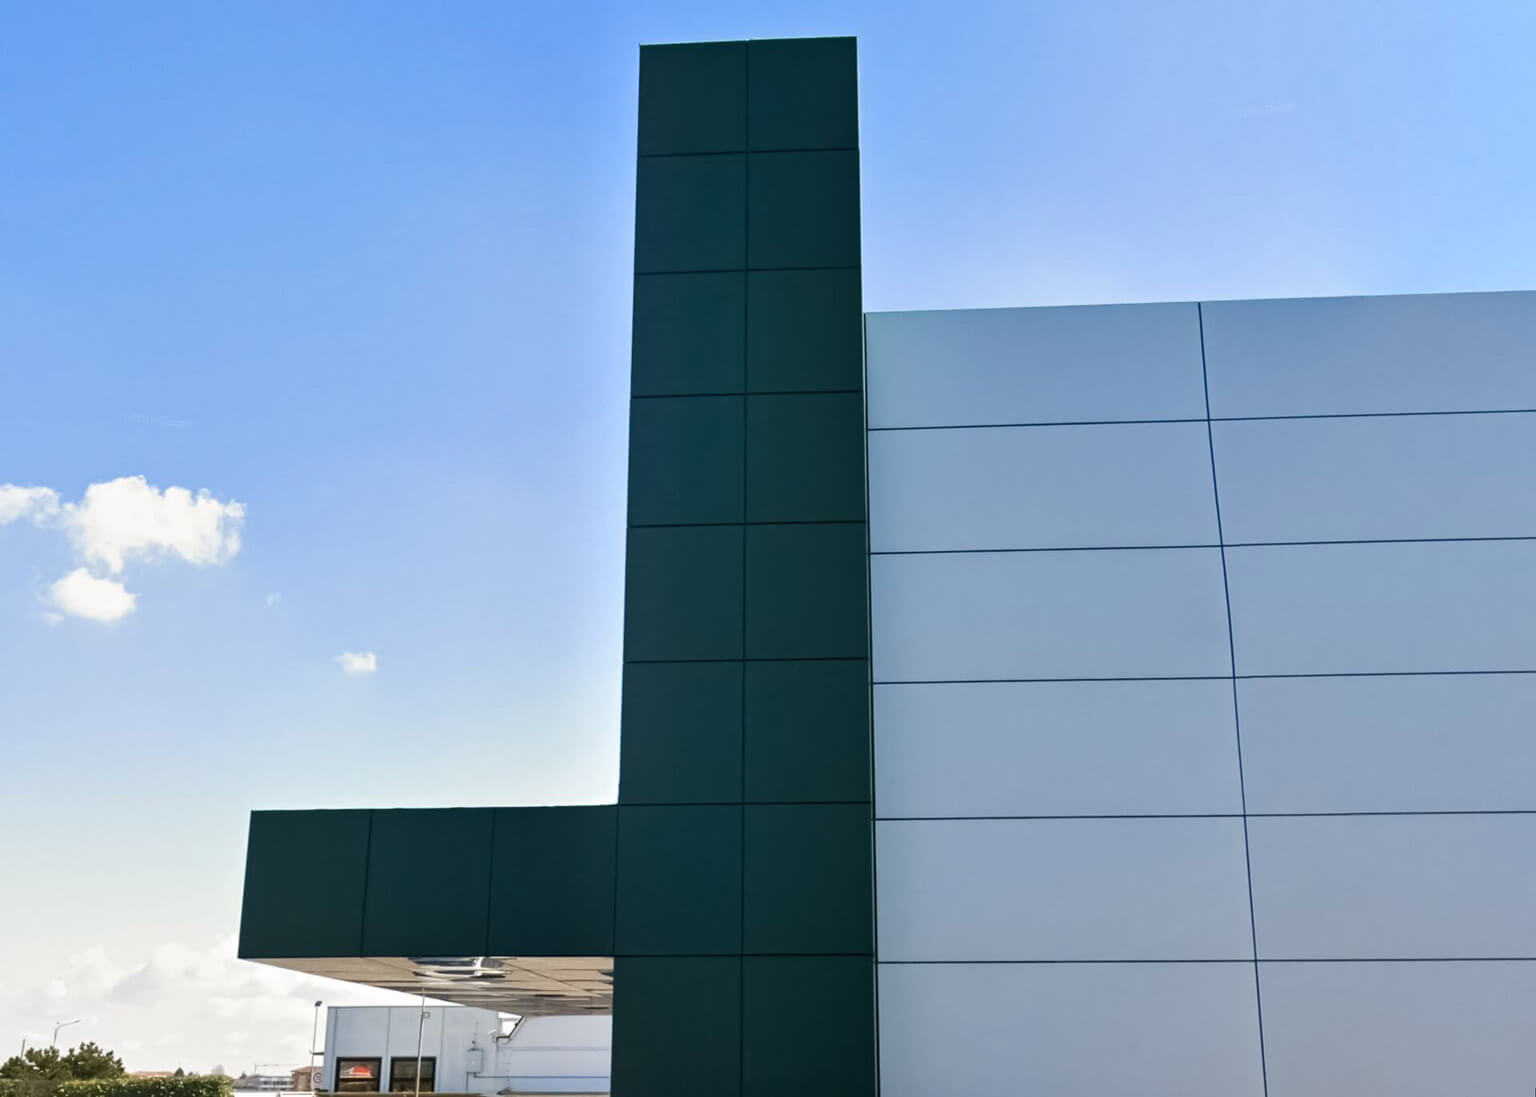 dettaglio giunzione pannelli alucobond plus composito colore verde e grigio facciata ventilata su strutture centro calzaturiero trecate